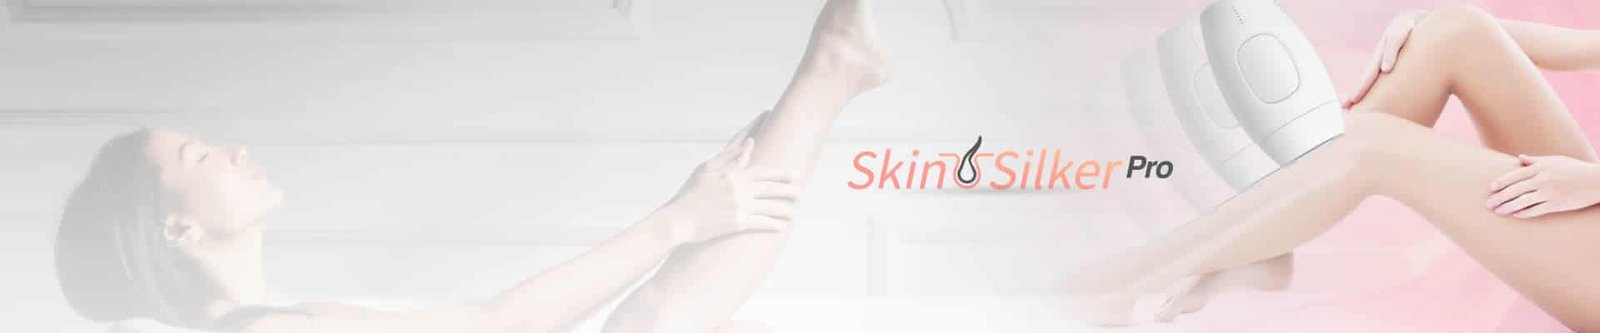 Skin Silker Pro, comentários e opiniões